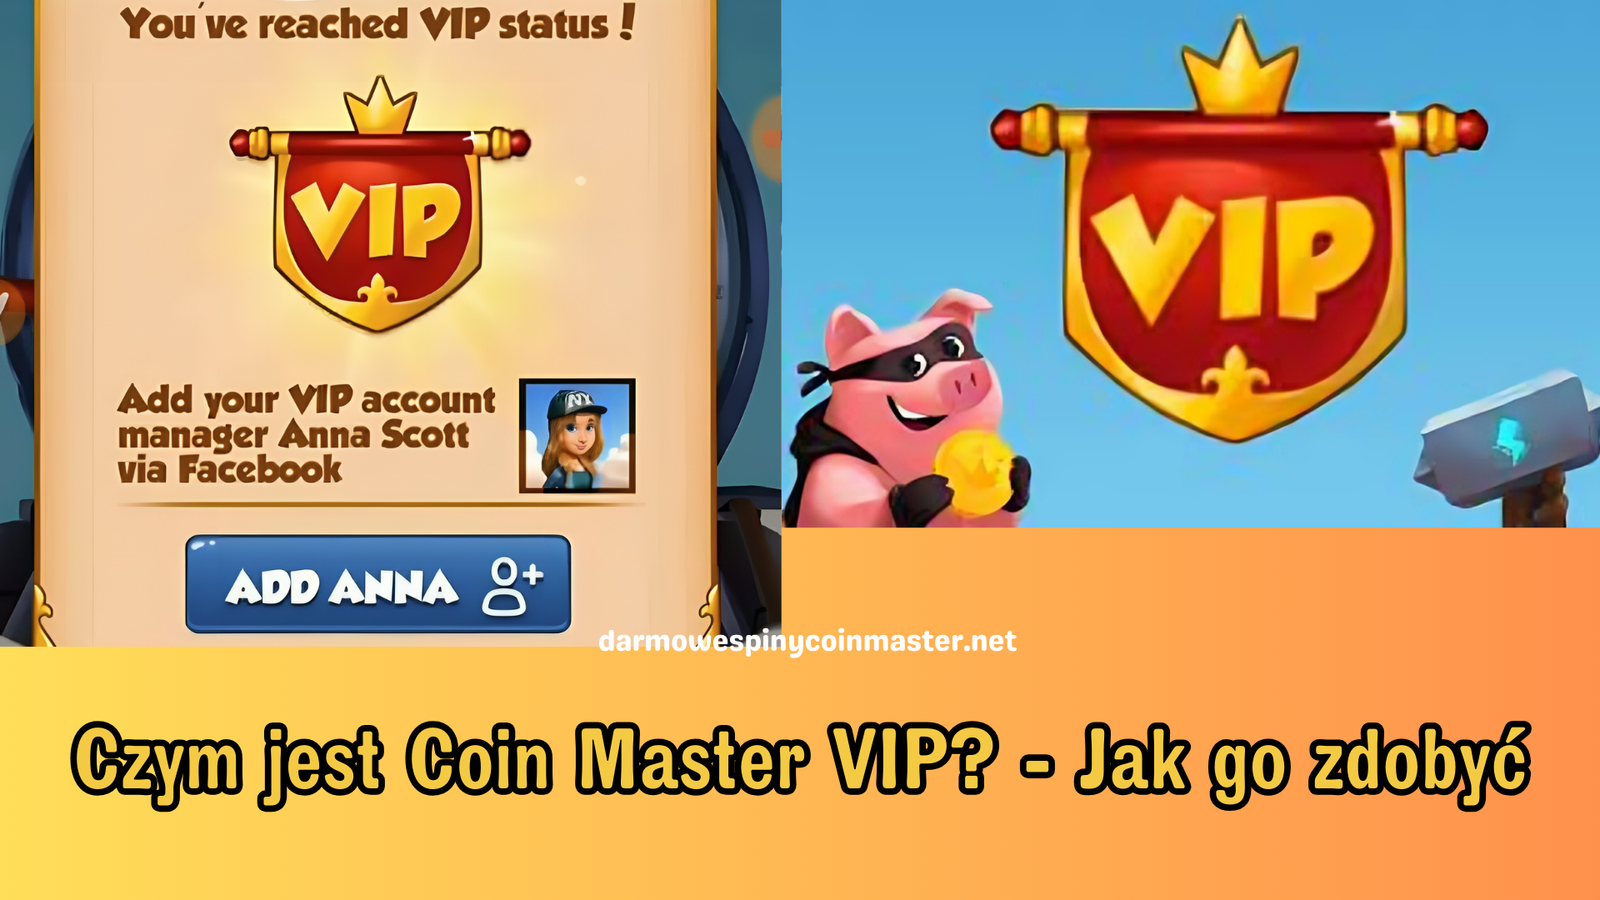 Czym jest Coin Master VIP? - Jak go zdobyć